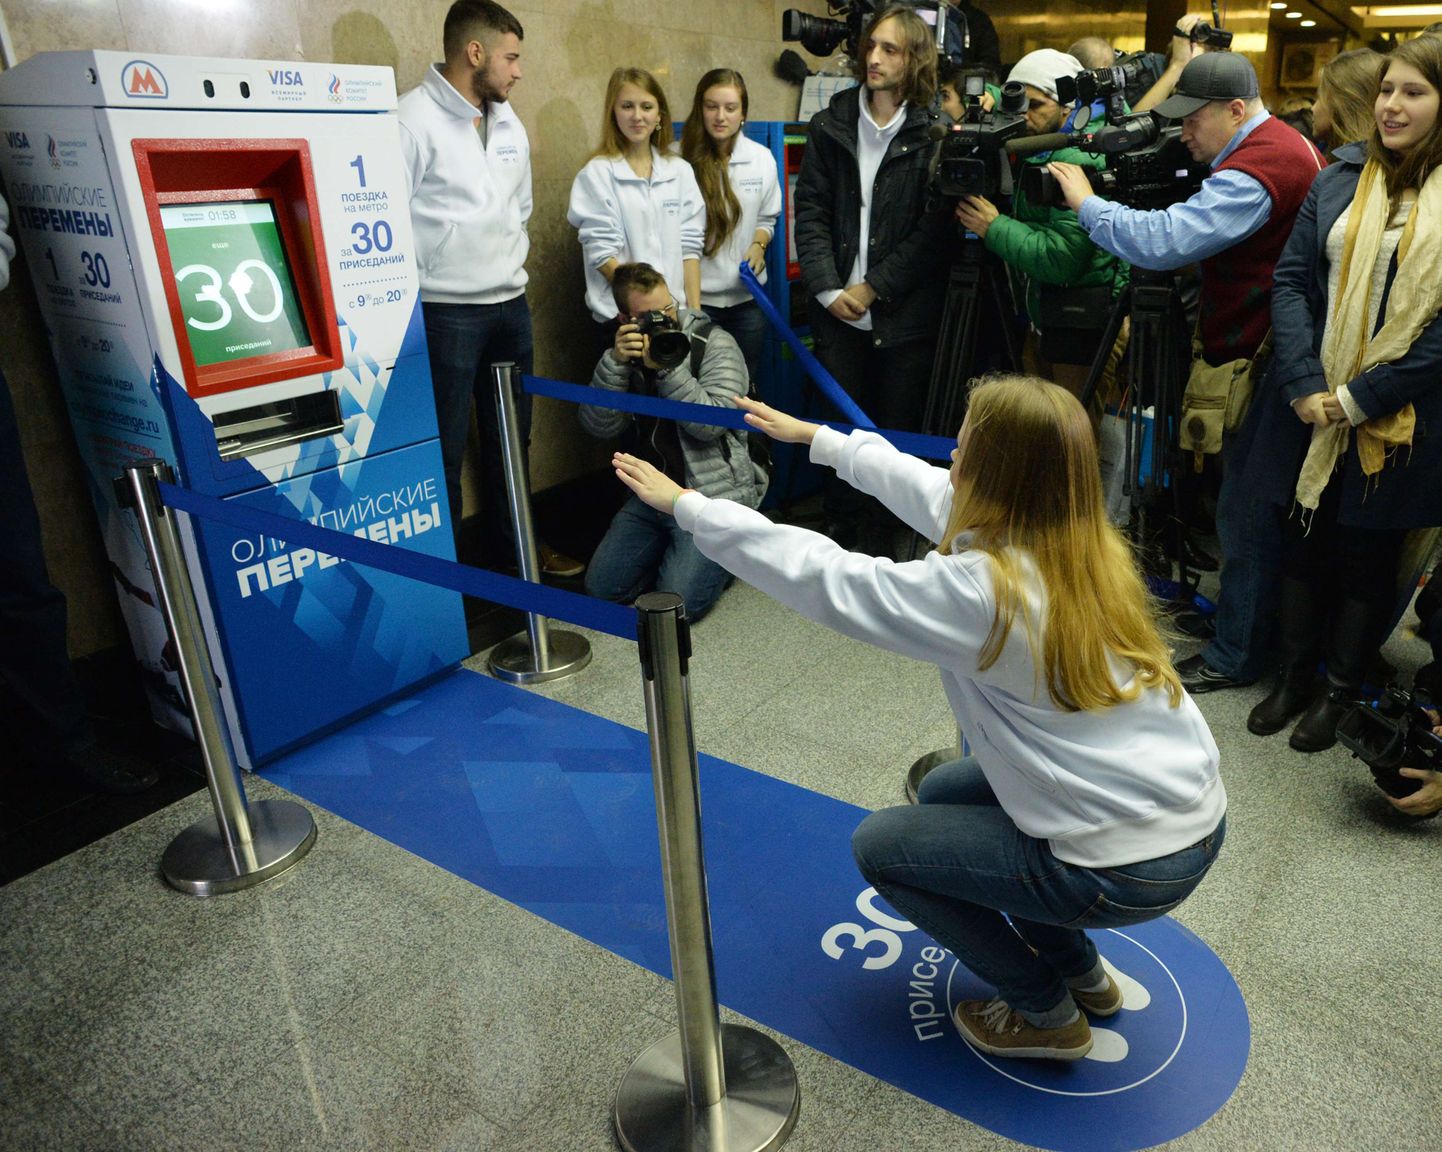 Noor naine kükitab piletimasina ees, mis müüb metroopileteid raha asemel kükkide eest.